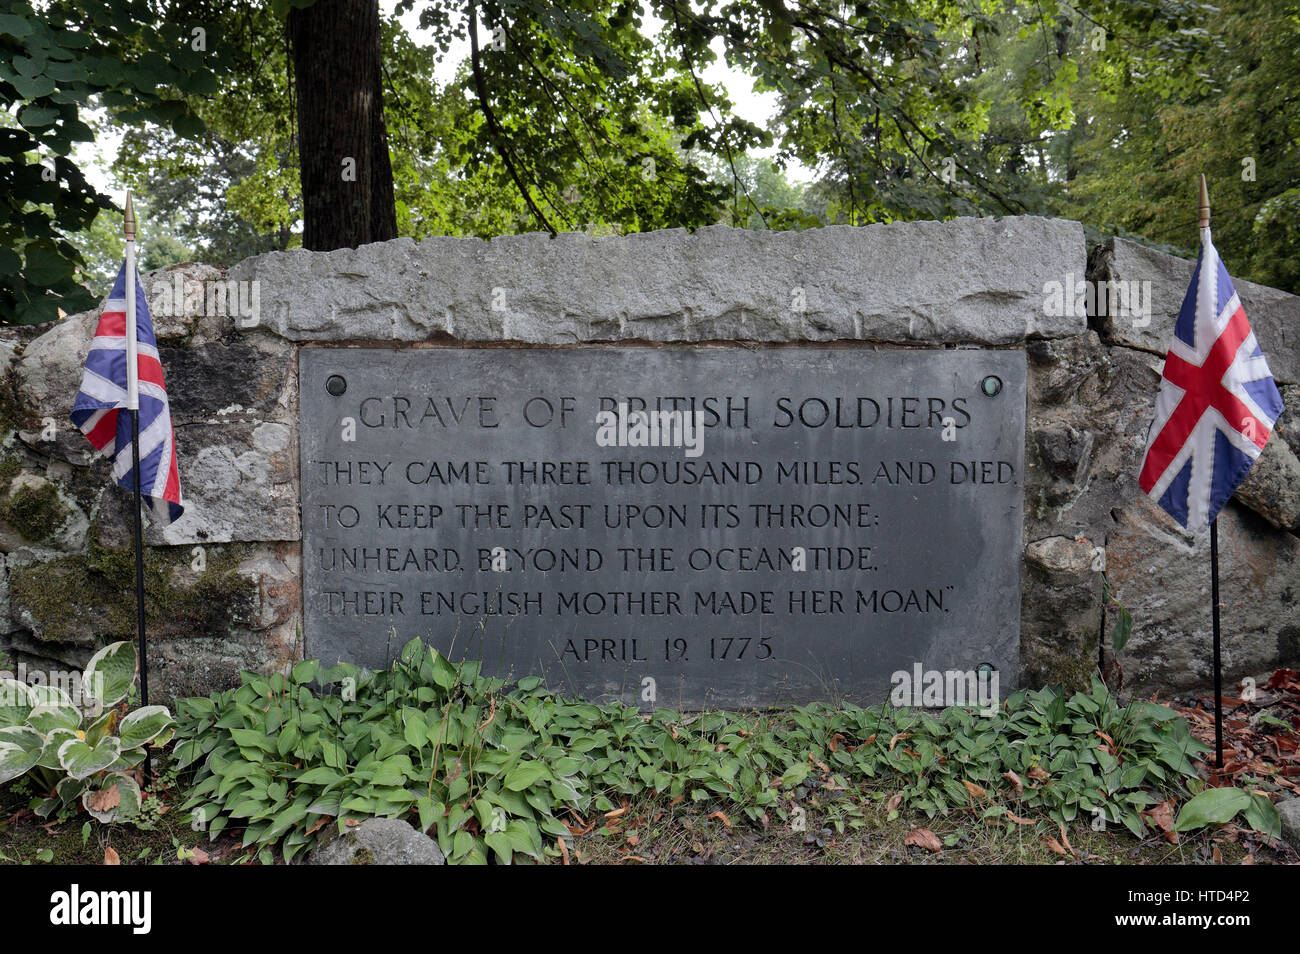 Marcatore di grave per i soldati britannici accanto al ponte di North Bridge, sito della battaglia di Concord, concordia, MA, Stati Uniti d'America. Foto Stock